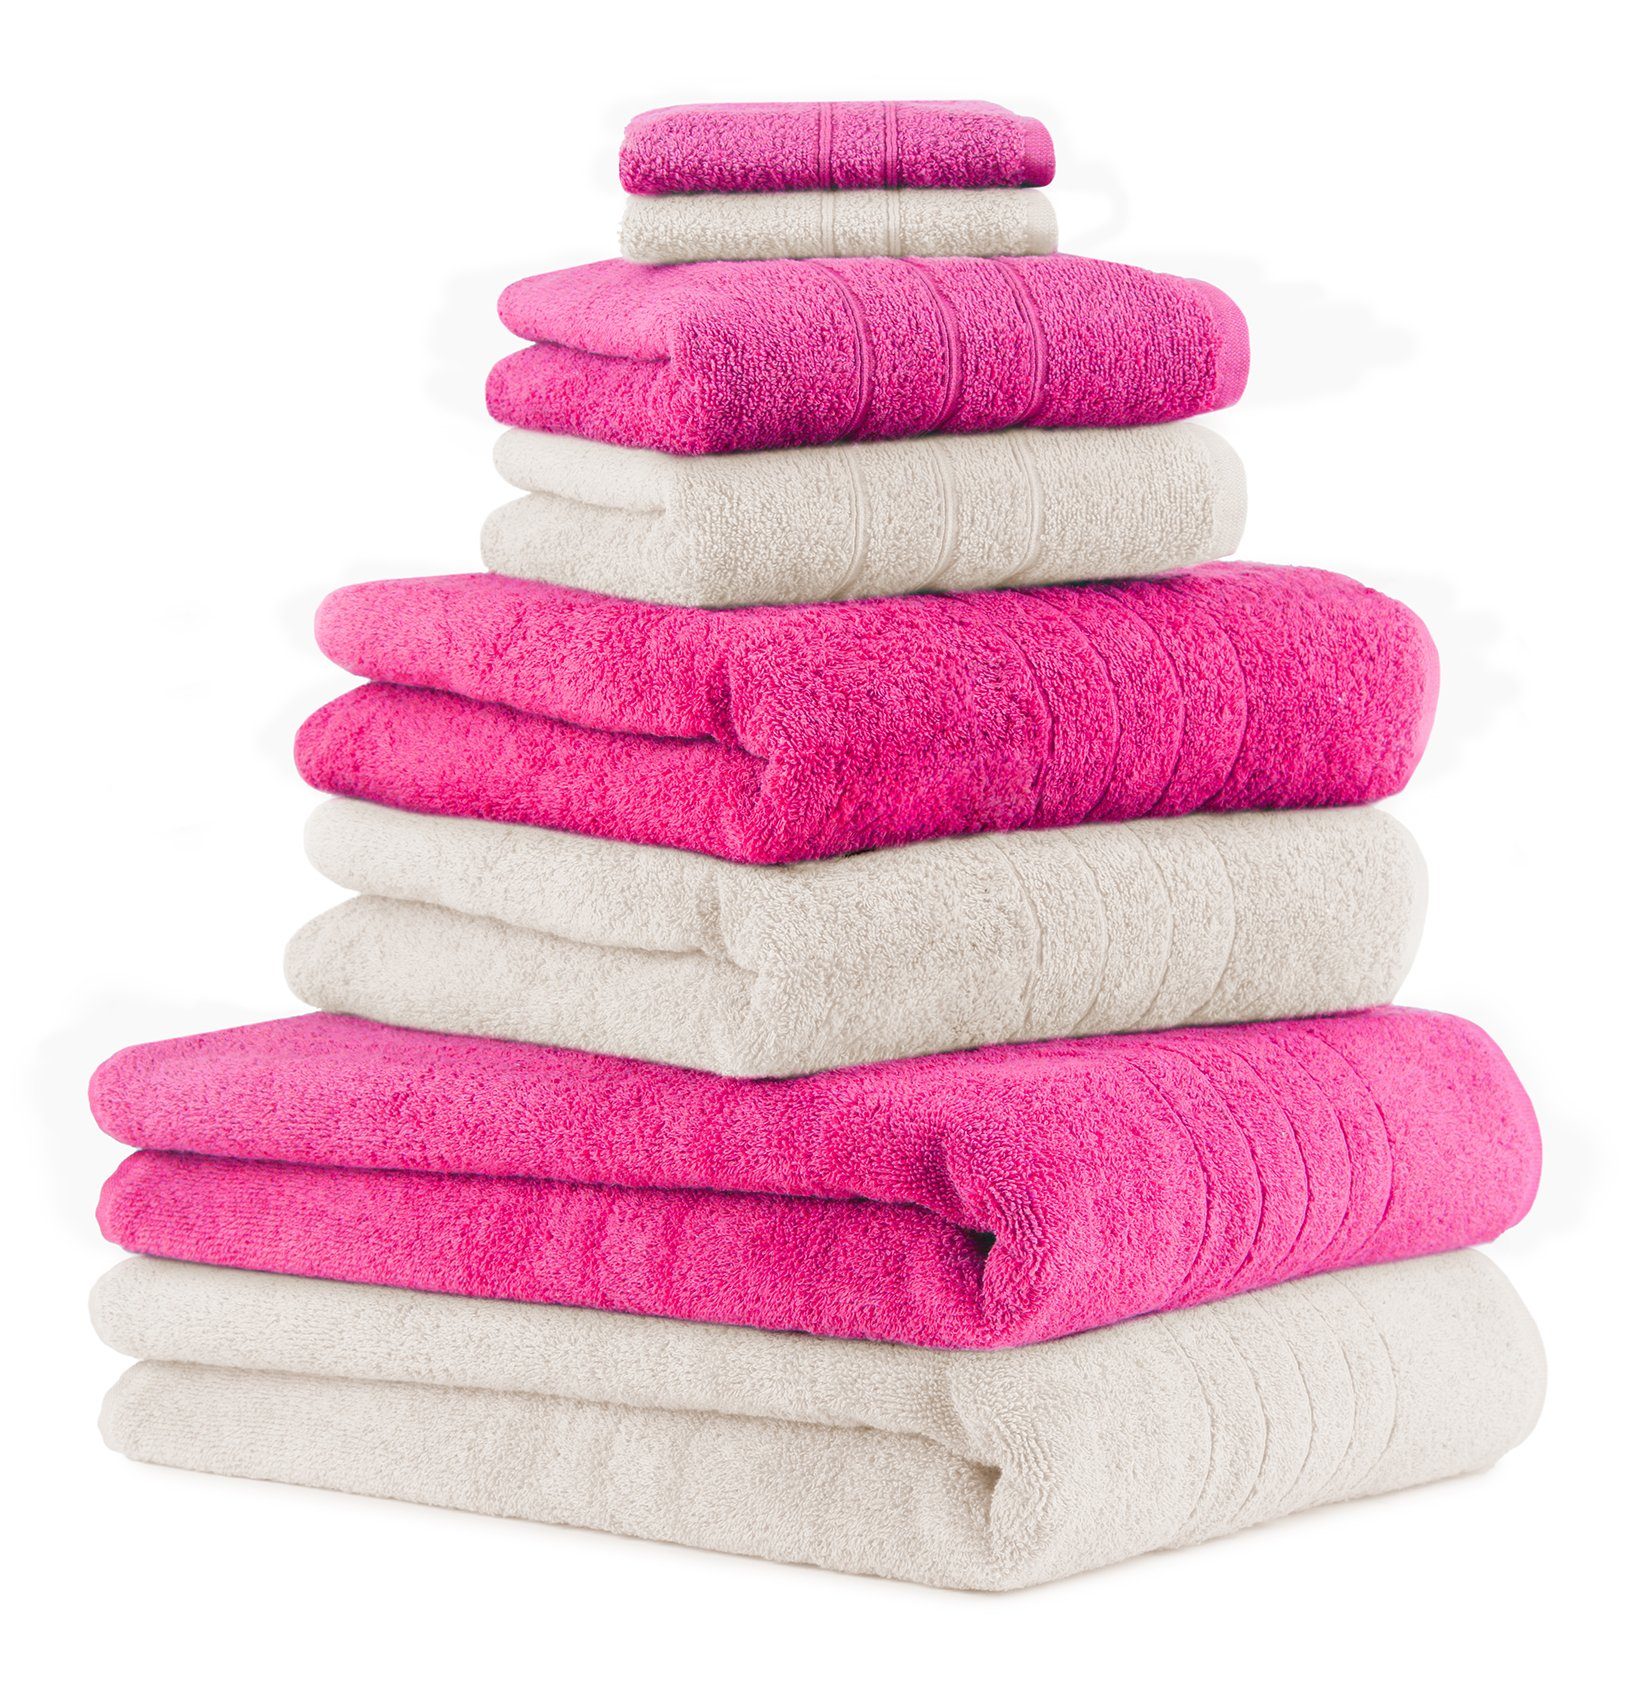 Betz Handtuch Set »8-TLG. Handtuch-Set Deluxe 100% Baumwolle 2 Badetücher 2  Duschtücher 2 Handtücher 2 Seiftücher Farbe Fuchsia und Creme« (8-tlg)  online kaufen | OTTO